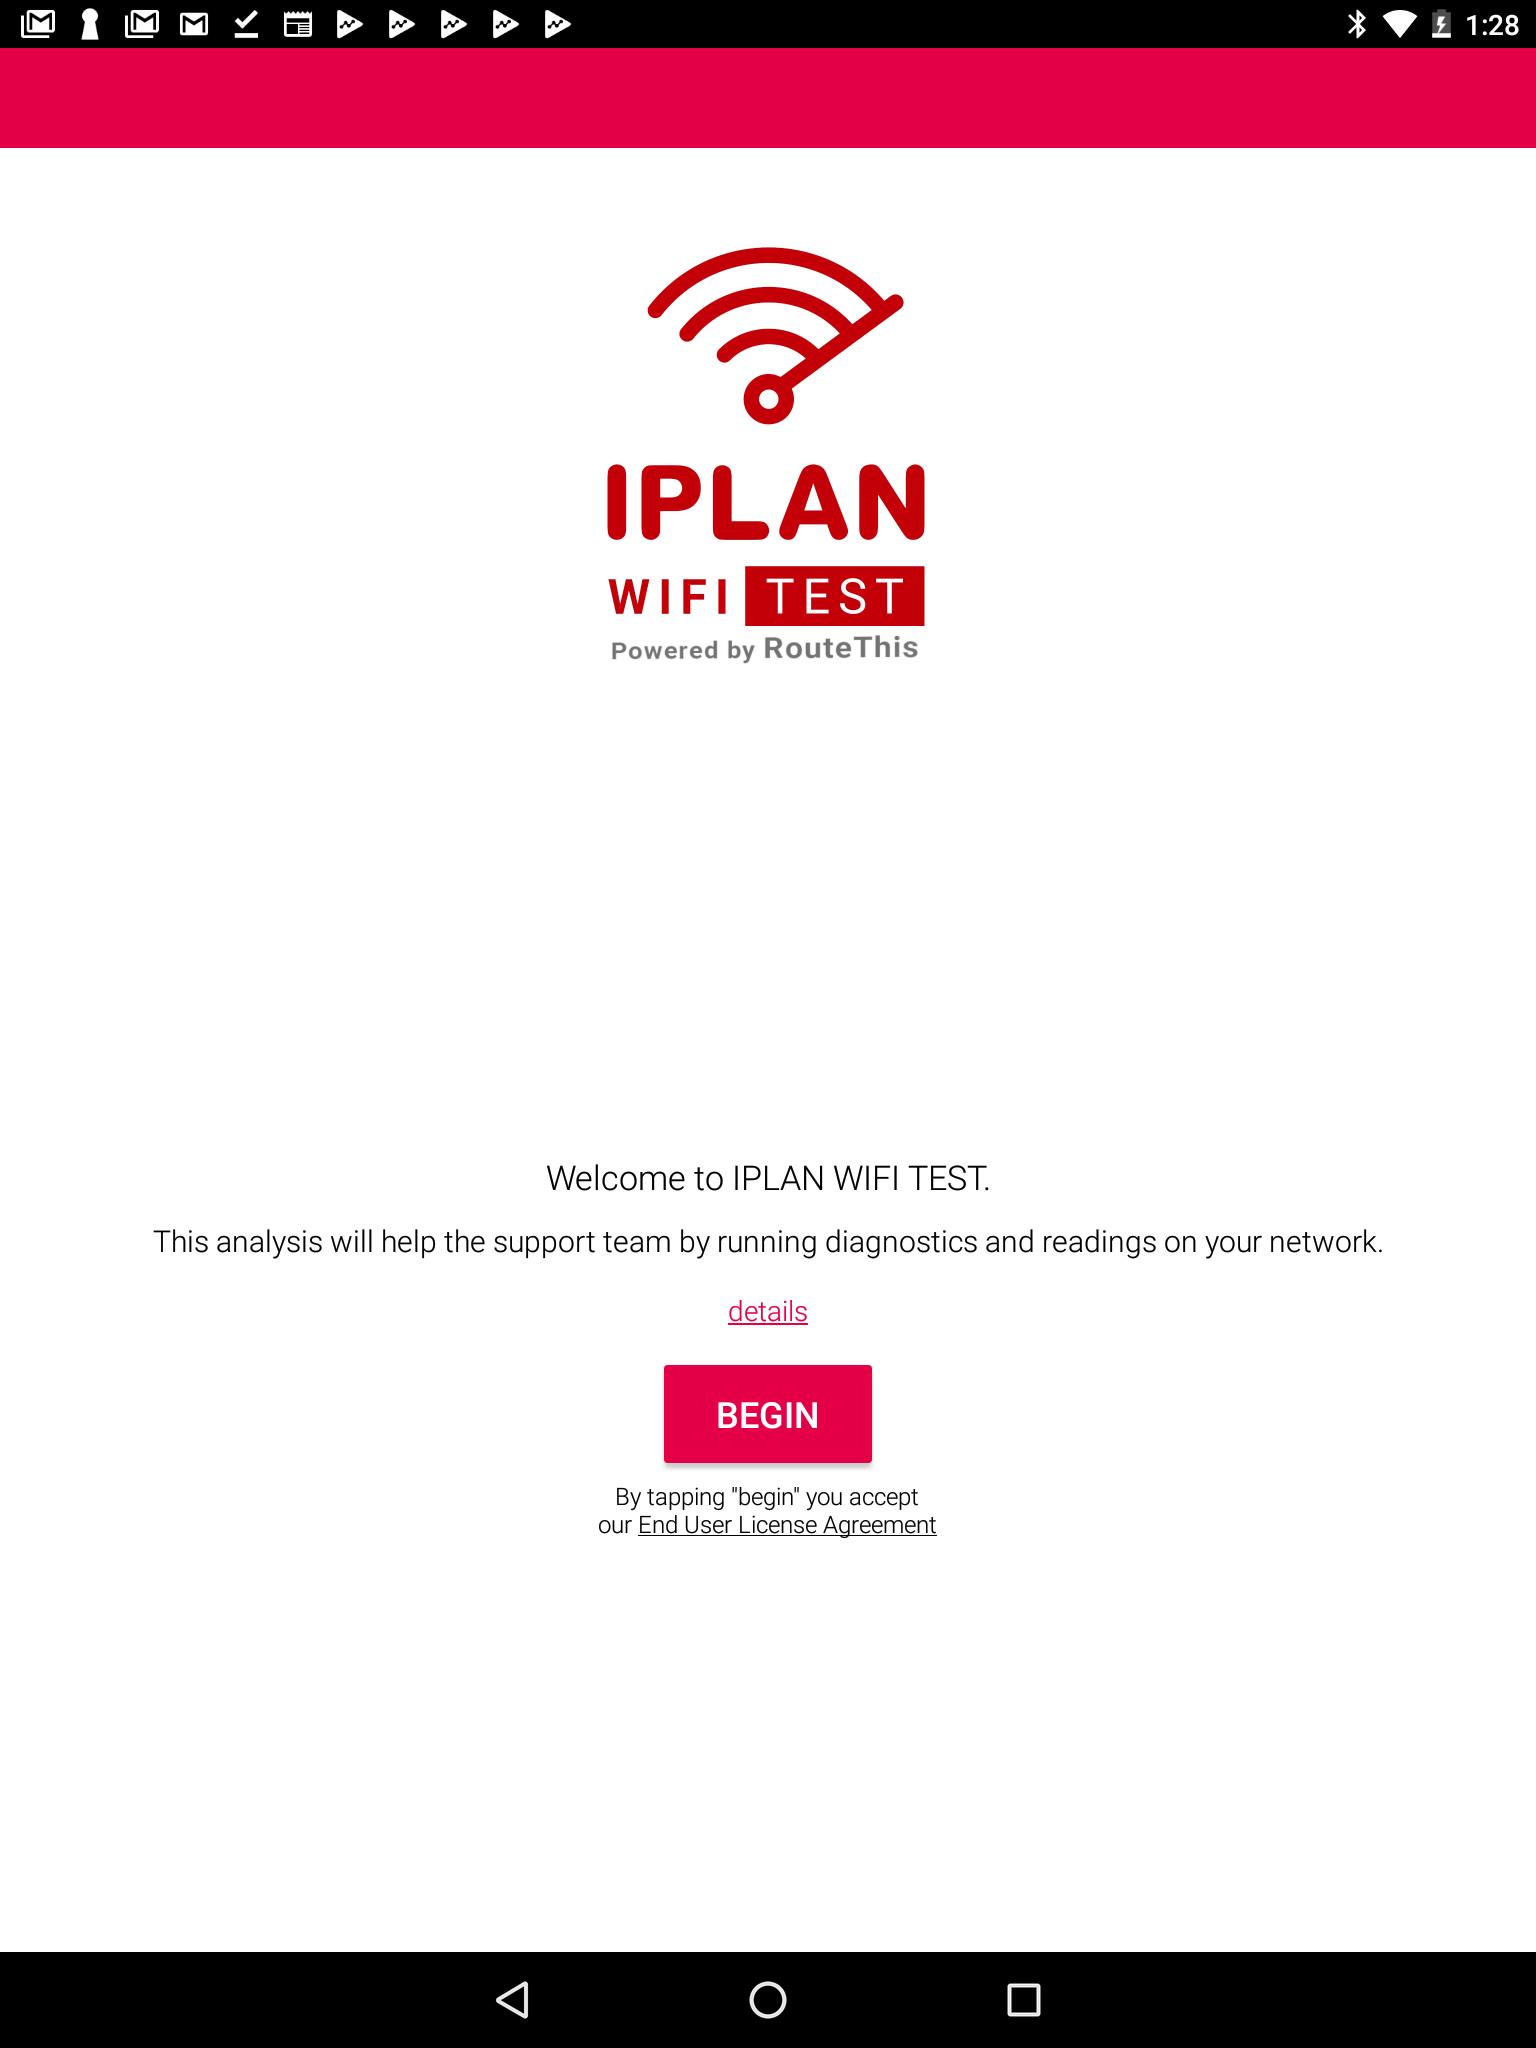 IPLAN WIFI TEST 1.21.03.31 Screenshot 9